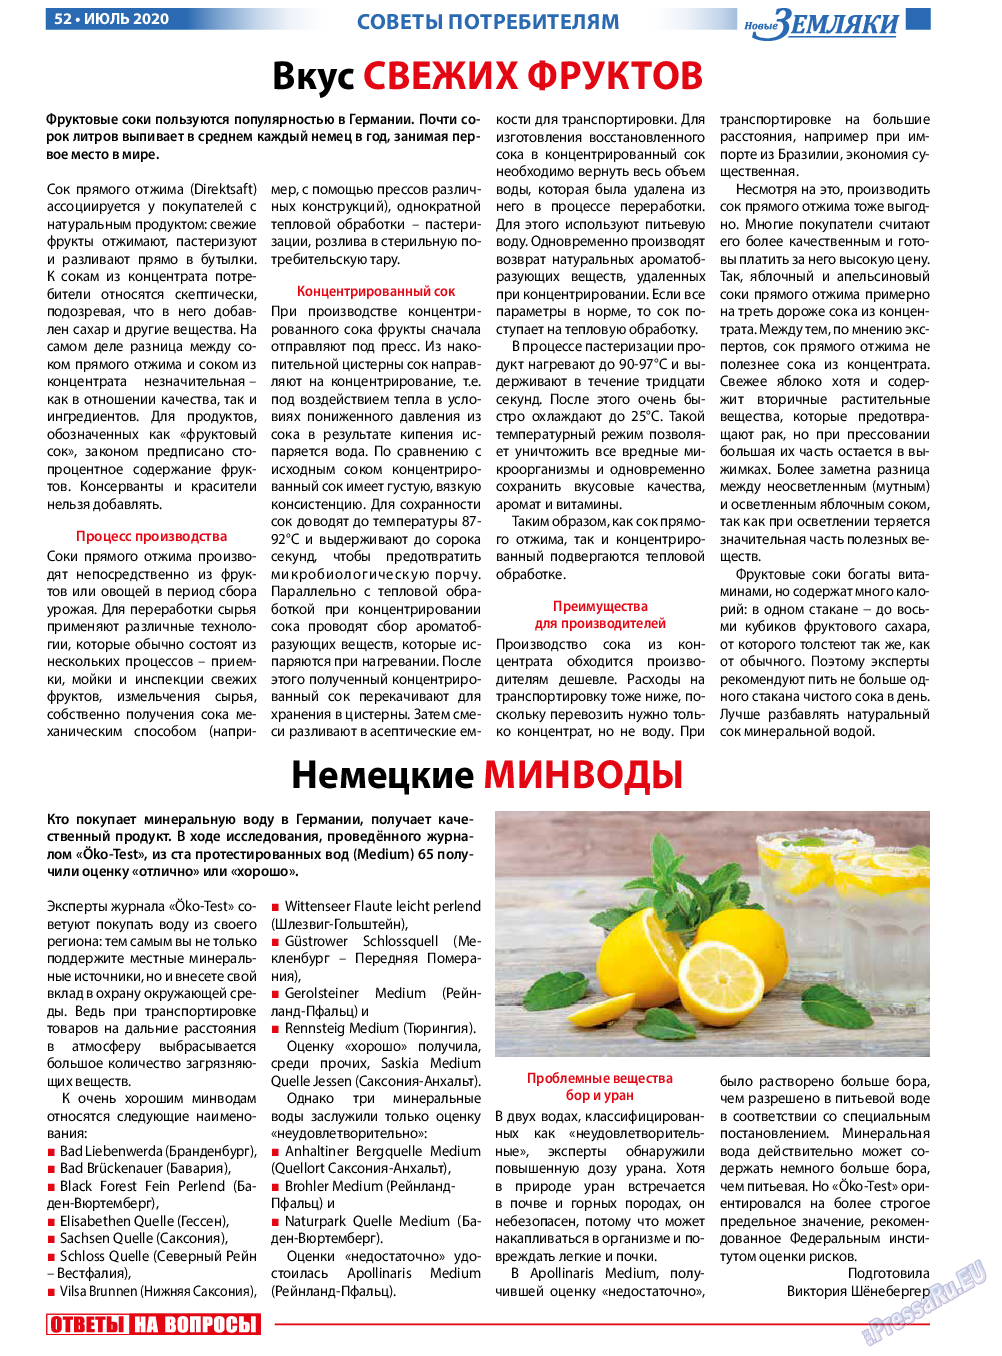 Новые Земляки, газета. 2020 №7 стр.52